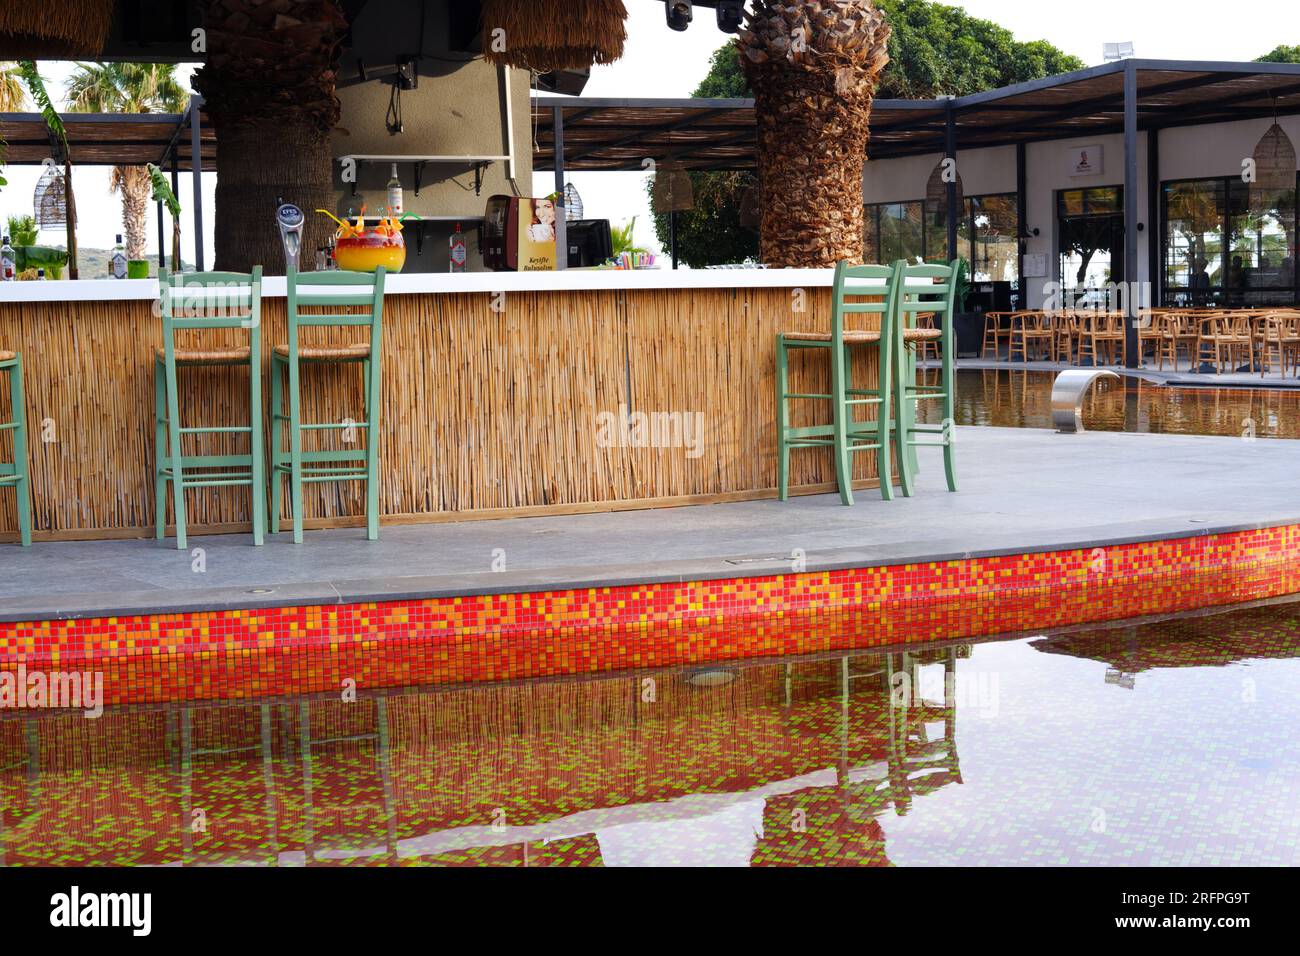 Tropic bar vicino alla piscina in un giorno d'estate con palme sullo sfondo. Riflesso sull'acqua e sulle sedie. Foto Stock